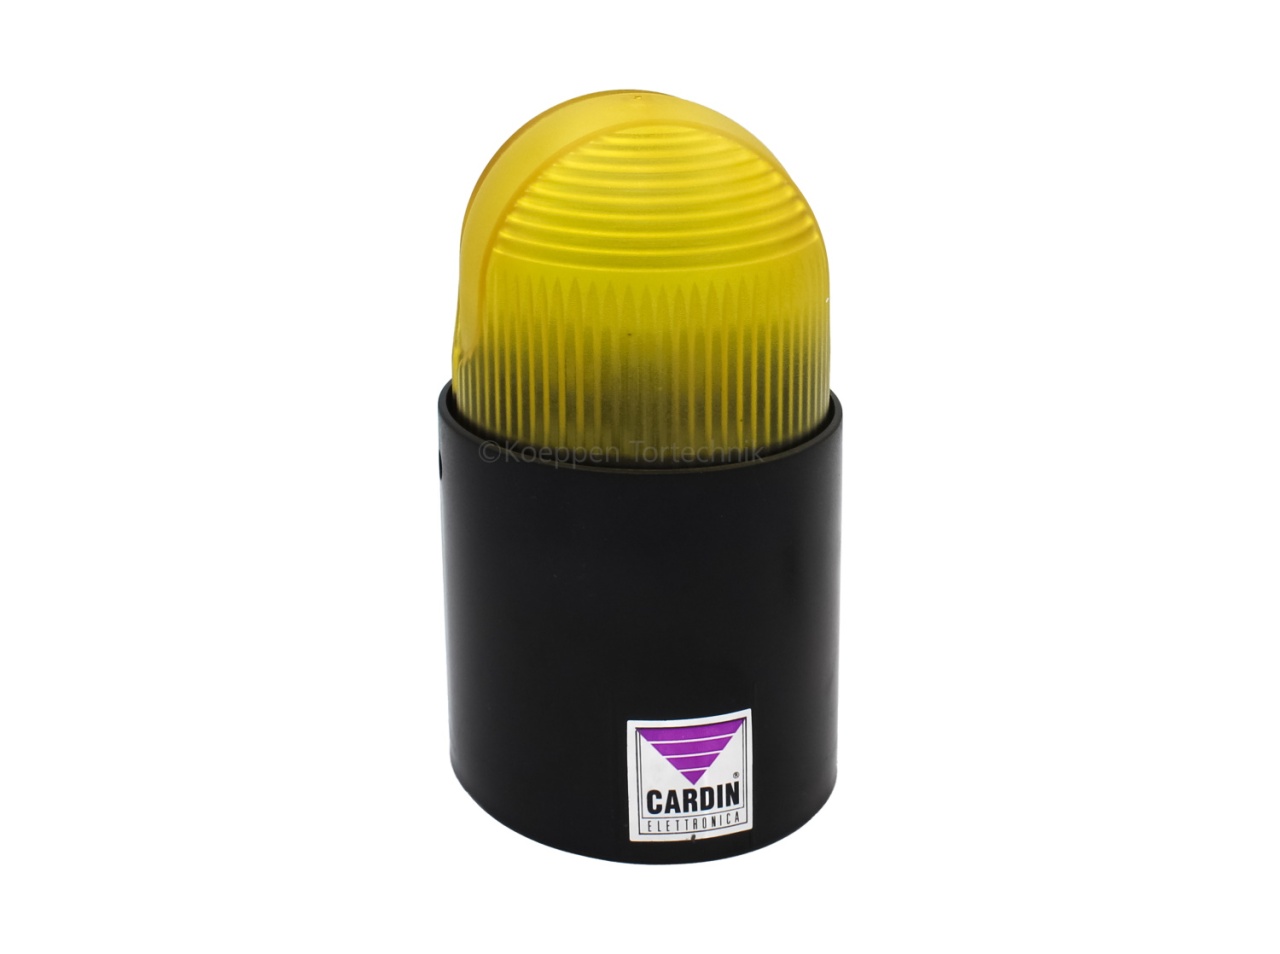 Blitzlampe BL80-220 V / gelb als Warnleuchte und Signallampe